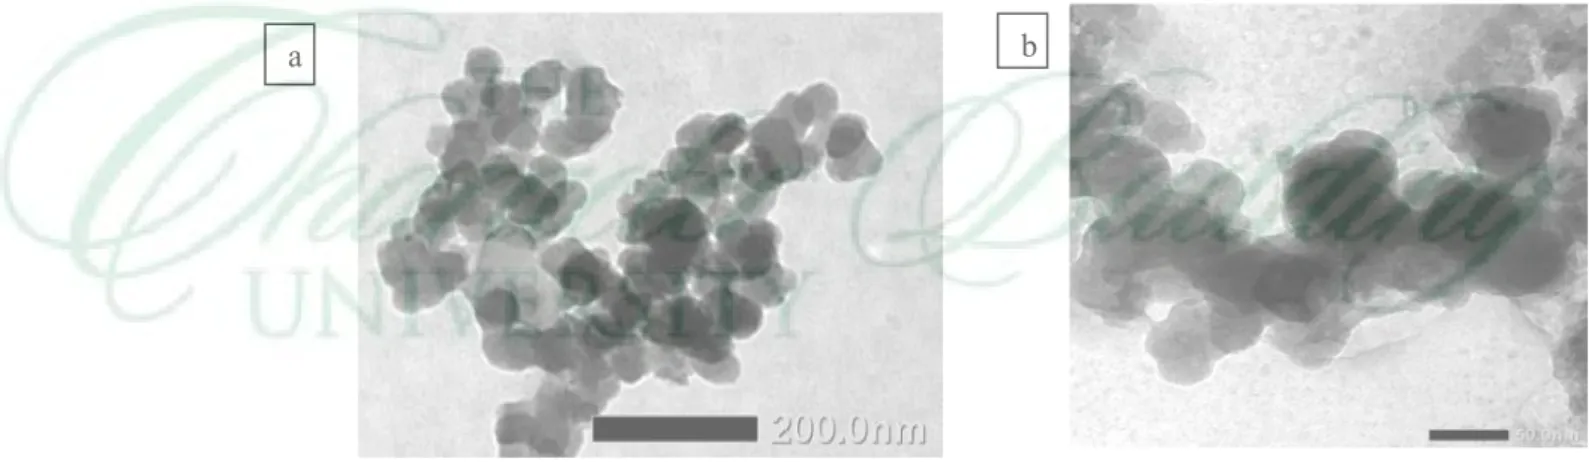 Gambar 7  Fotograf morfologi nano-kristal selulosa dengan TEM,  a) pada skala 200 nm, b) pada skala 50 nm 